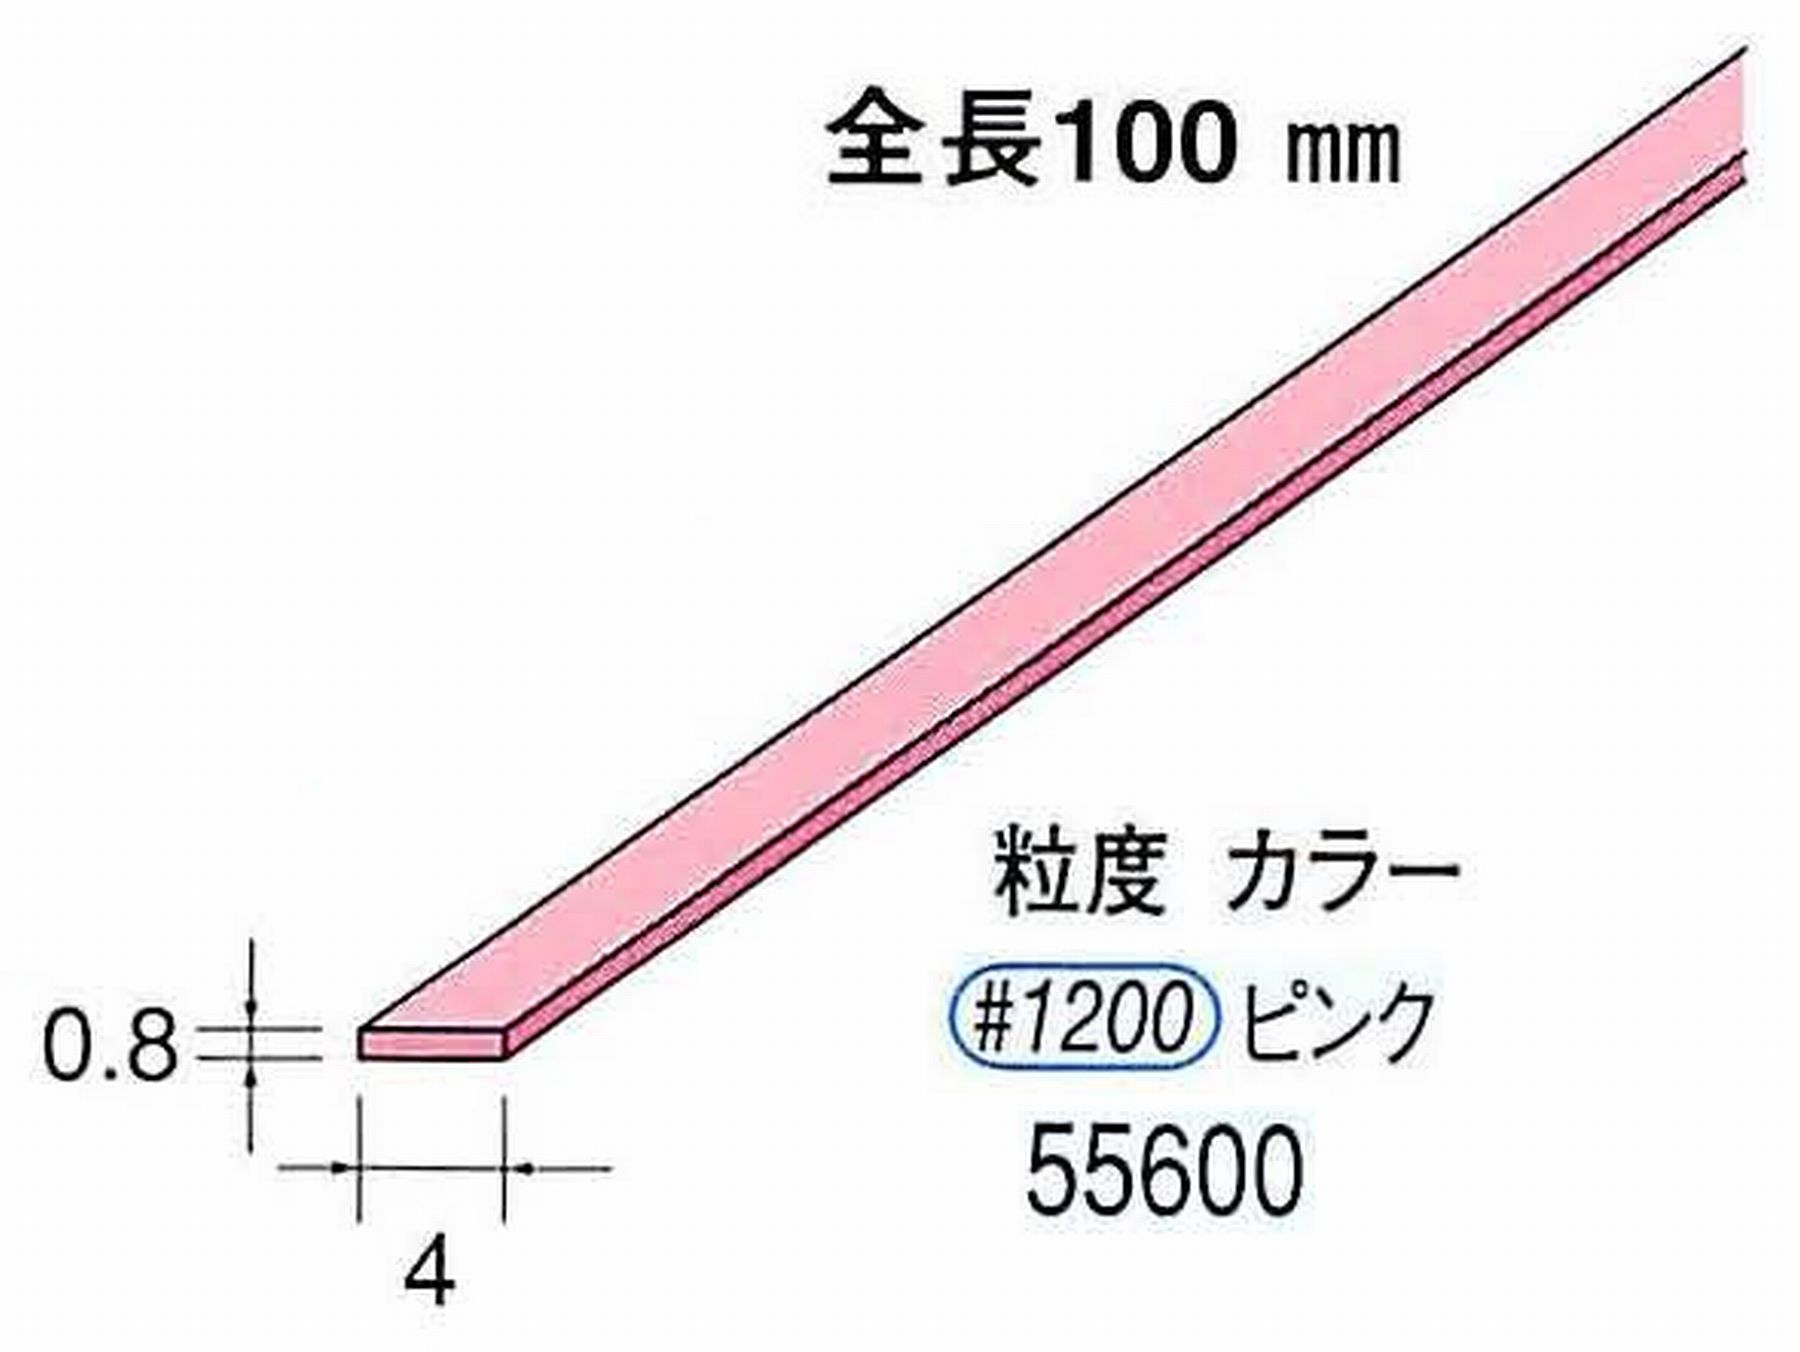 ナカニシ/NAKANISHI セラファイバー砥石 全長100mm ピンク 55600